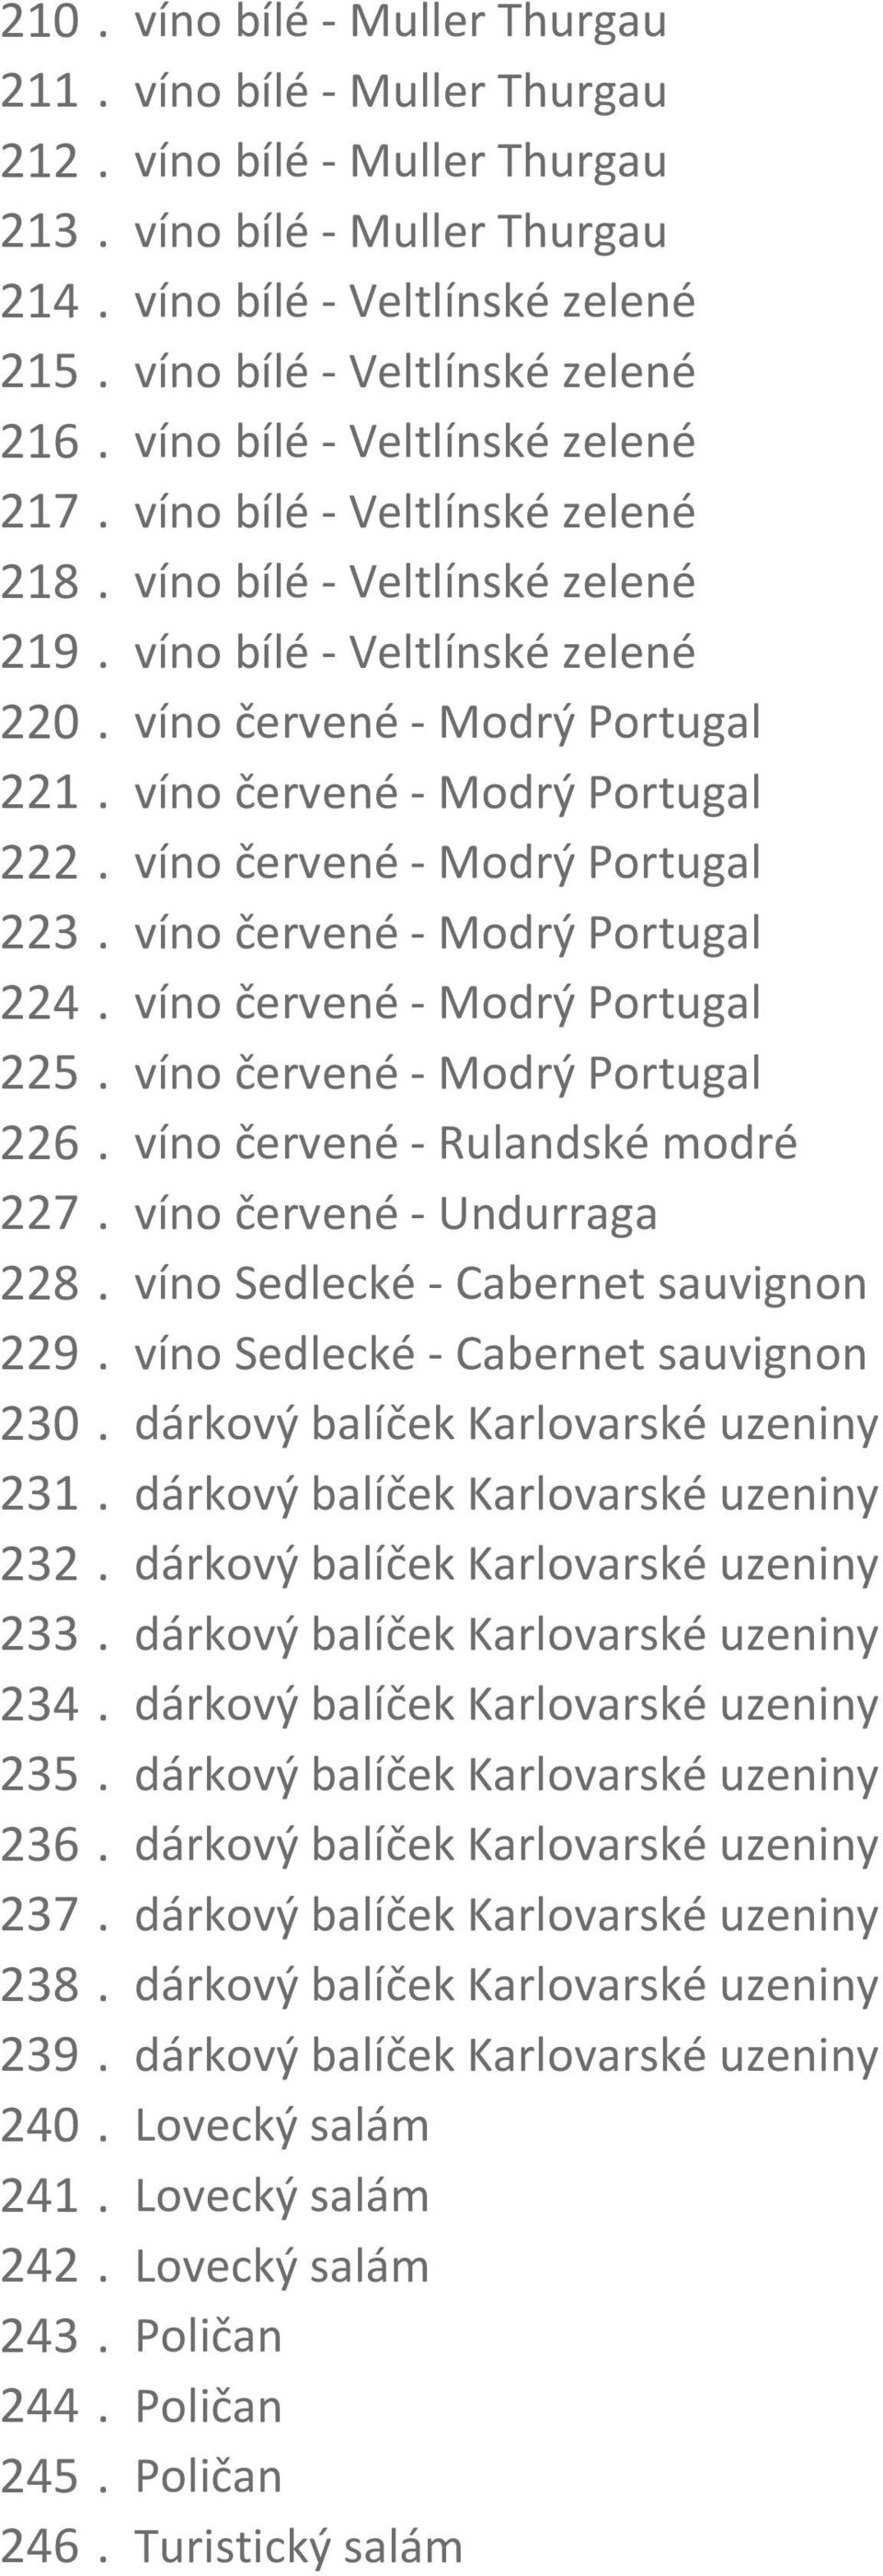 víno červené - Modrý Portugal 221. víno červené - Modrý Portugal 222. víno červené - Modrý Portugal 223. víno červené - Modrý Portugal 224. víno červené - Modrý Portugal 225.